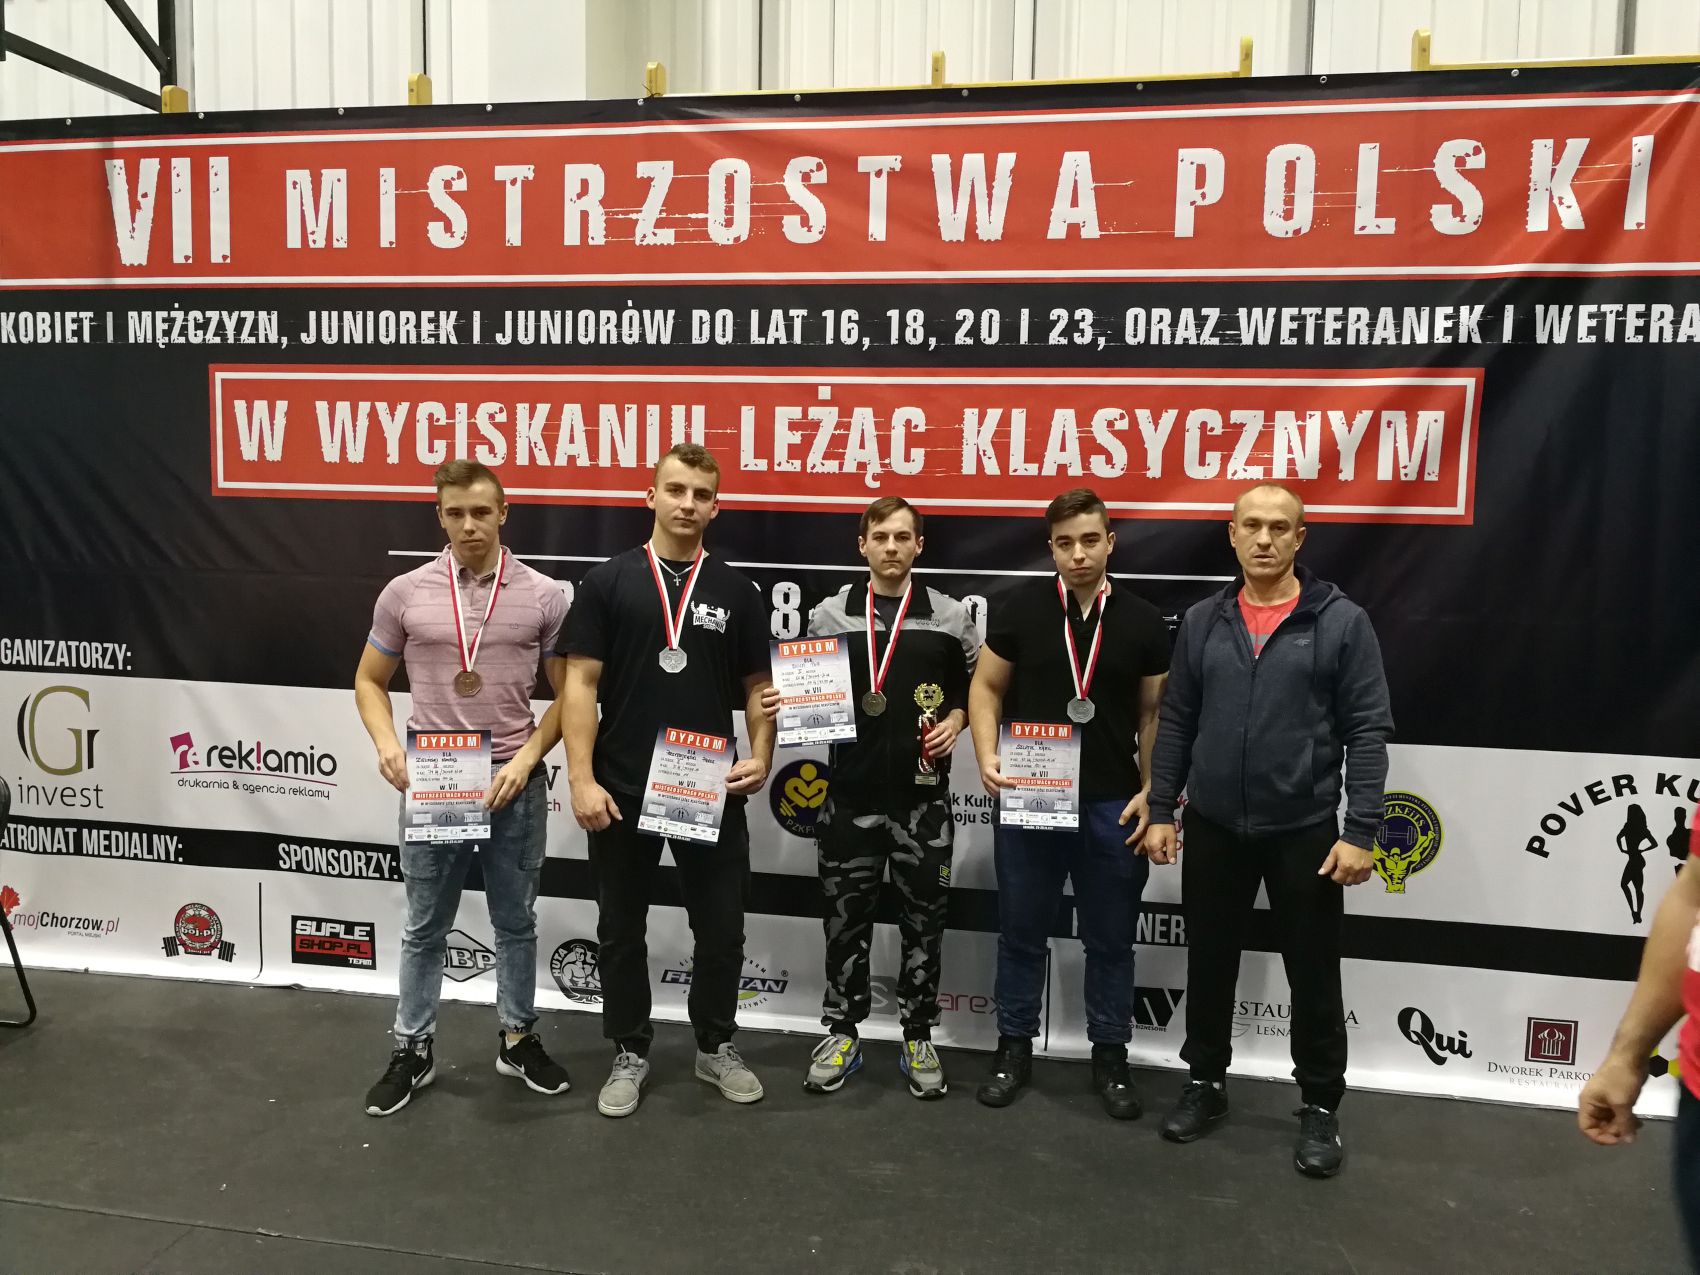 Mistrzostw Polski Juniorw w Wyciskaniu Sztangi Lec Klasycznym, Chorzw 28-29.10.2017 r.